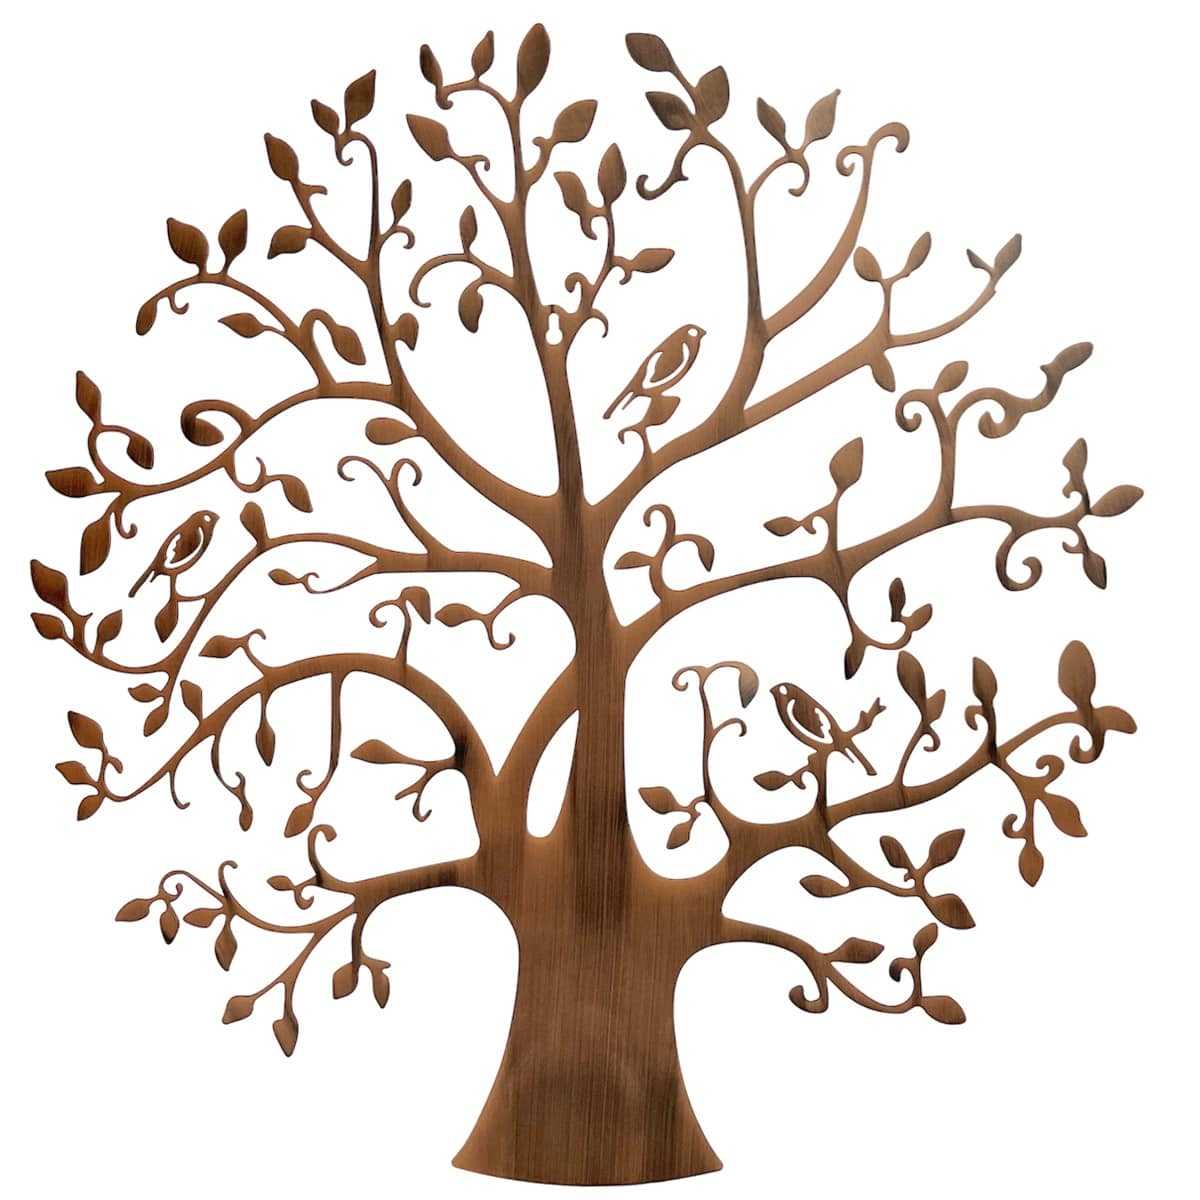 Petit arbre de Vie ☆ bois naturel porte-bonheur diamètre 5cm